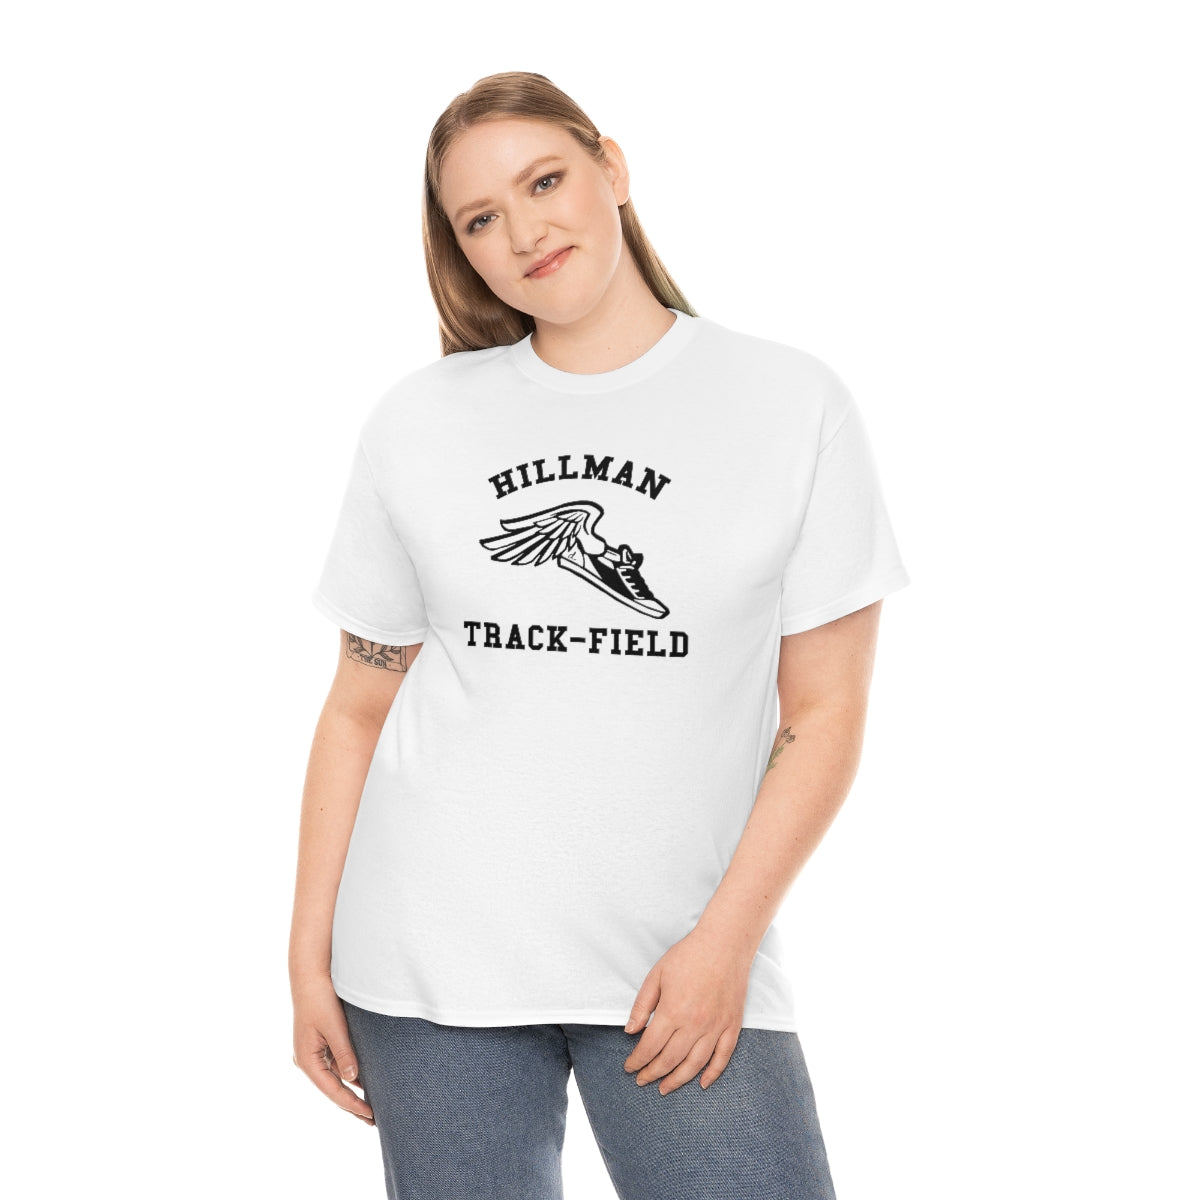 Hillman Track Team: Black Lettering Unisex Short Sleeve Tee